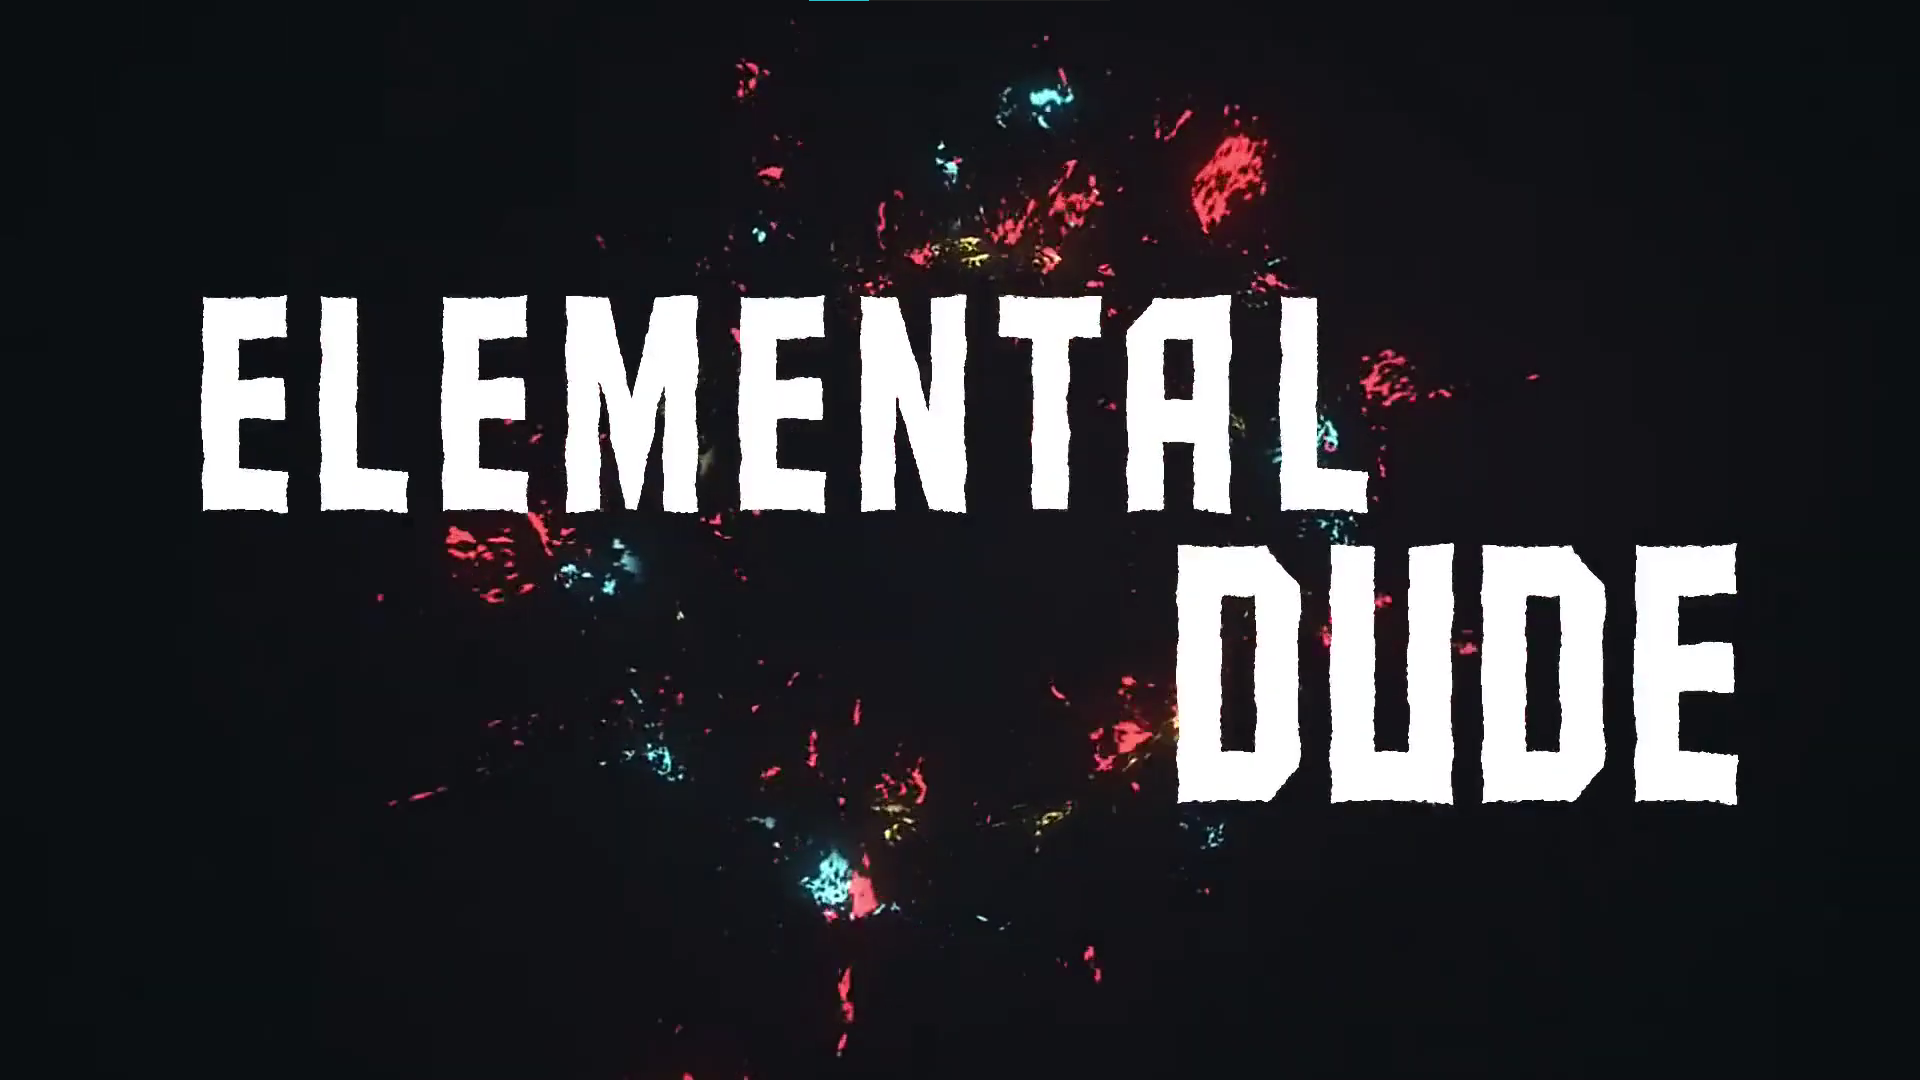 Elemental dude